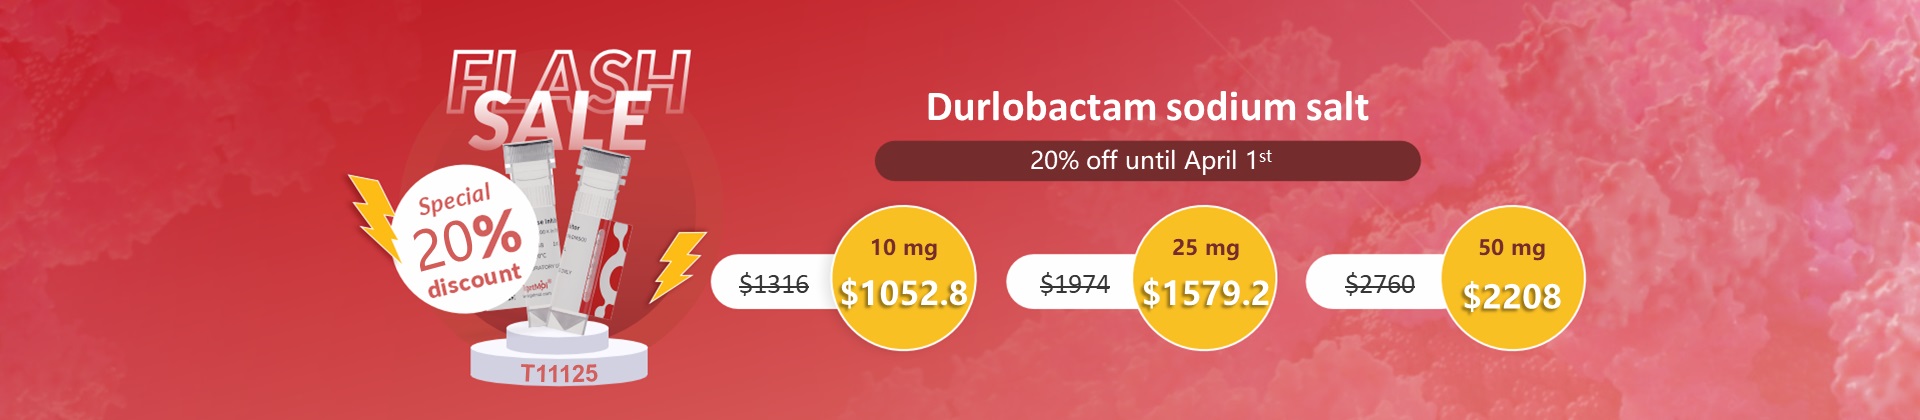 Durlobactam sodium salt 80% discount